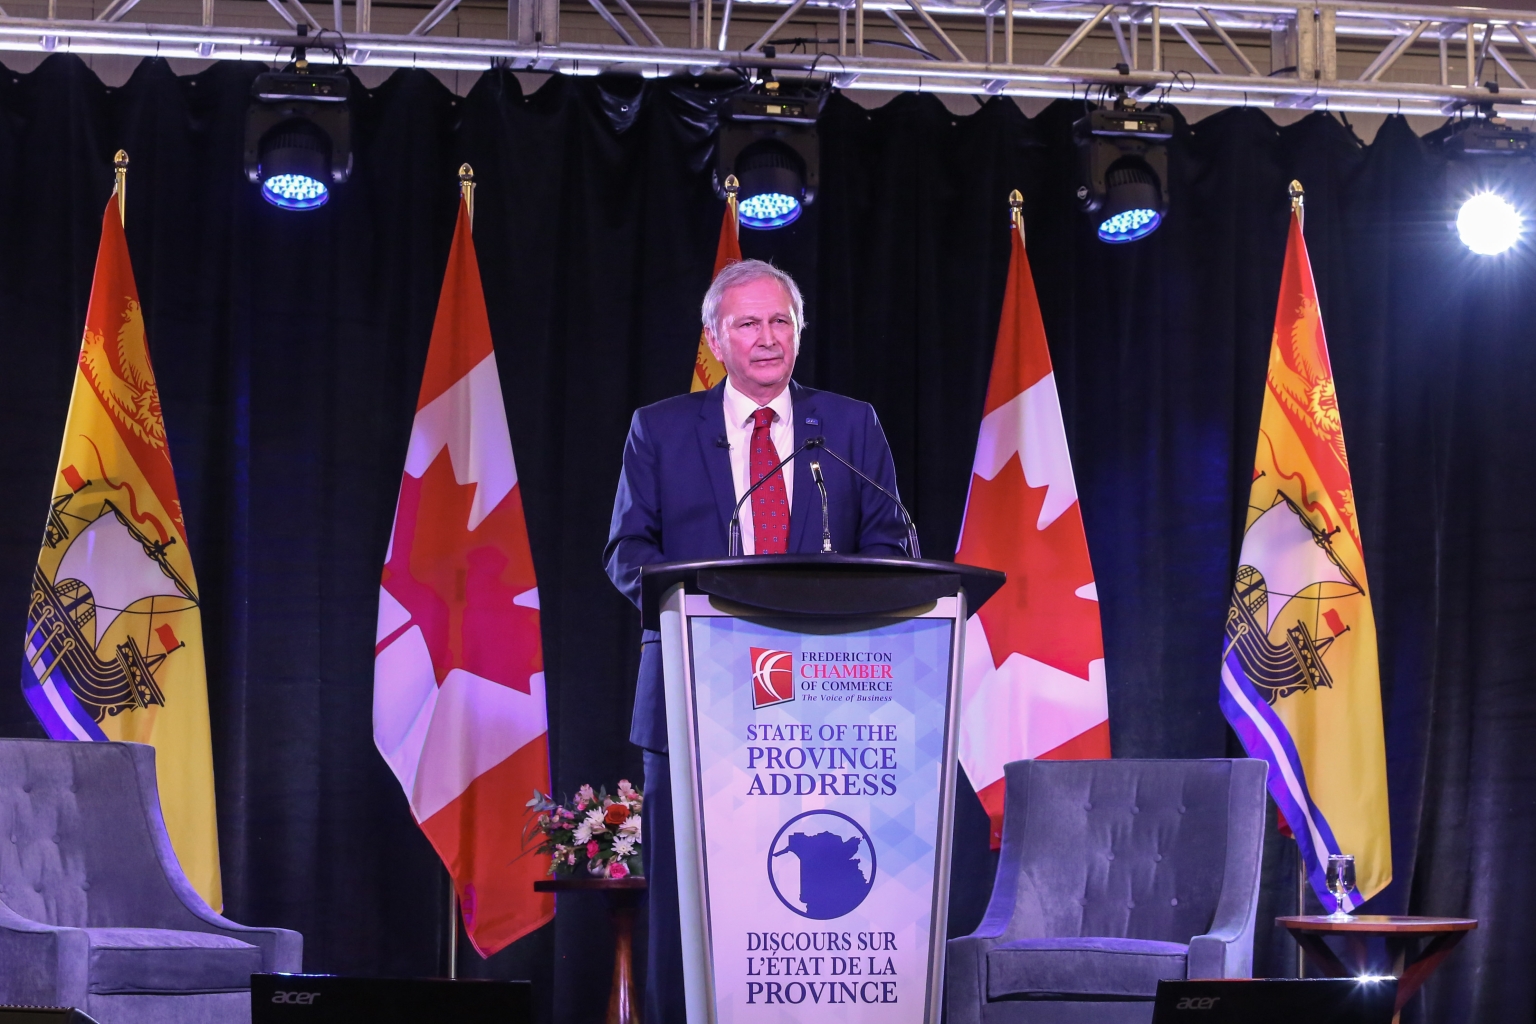 Blaire Higgs, Premier-ministre de la province canadienne du Nouveau-Brunswick, a annoncé lors de son discours sur la situation de la province que le gouvernement continuera à soutenir le SMR développé par Arc Canada.